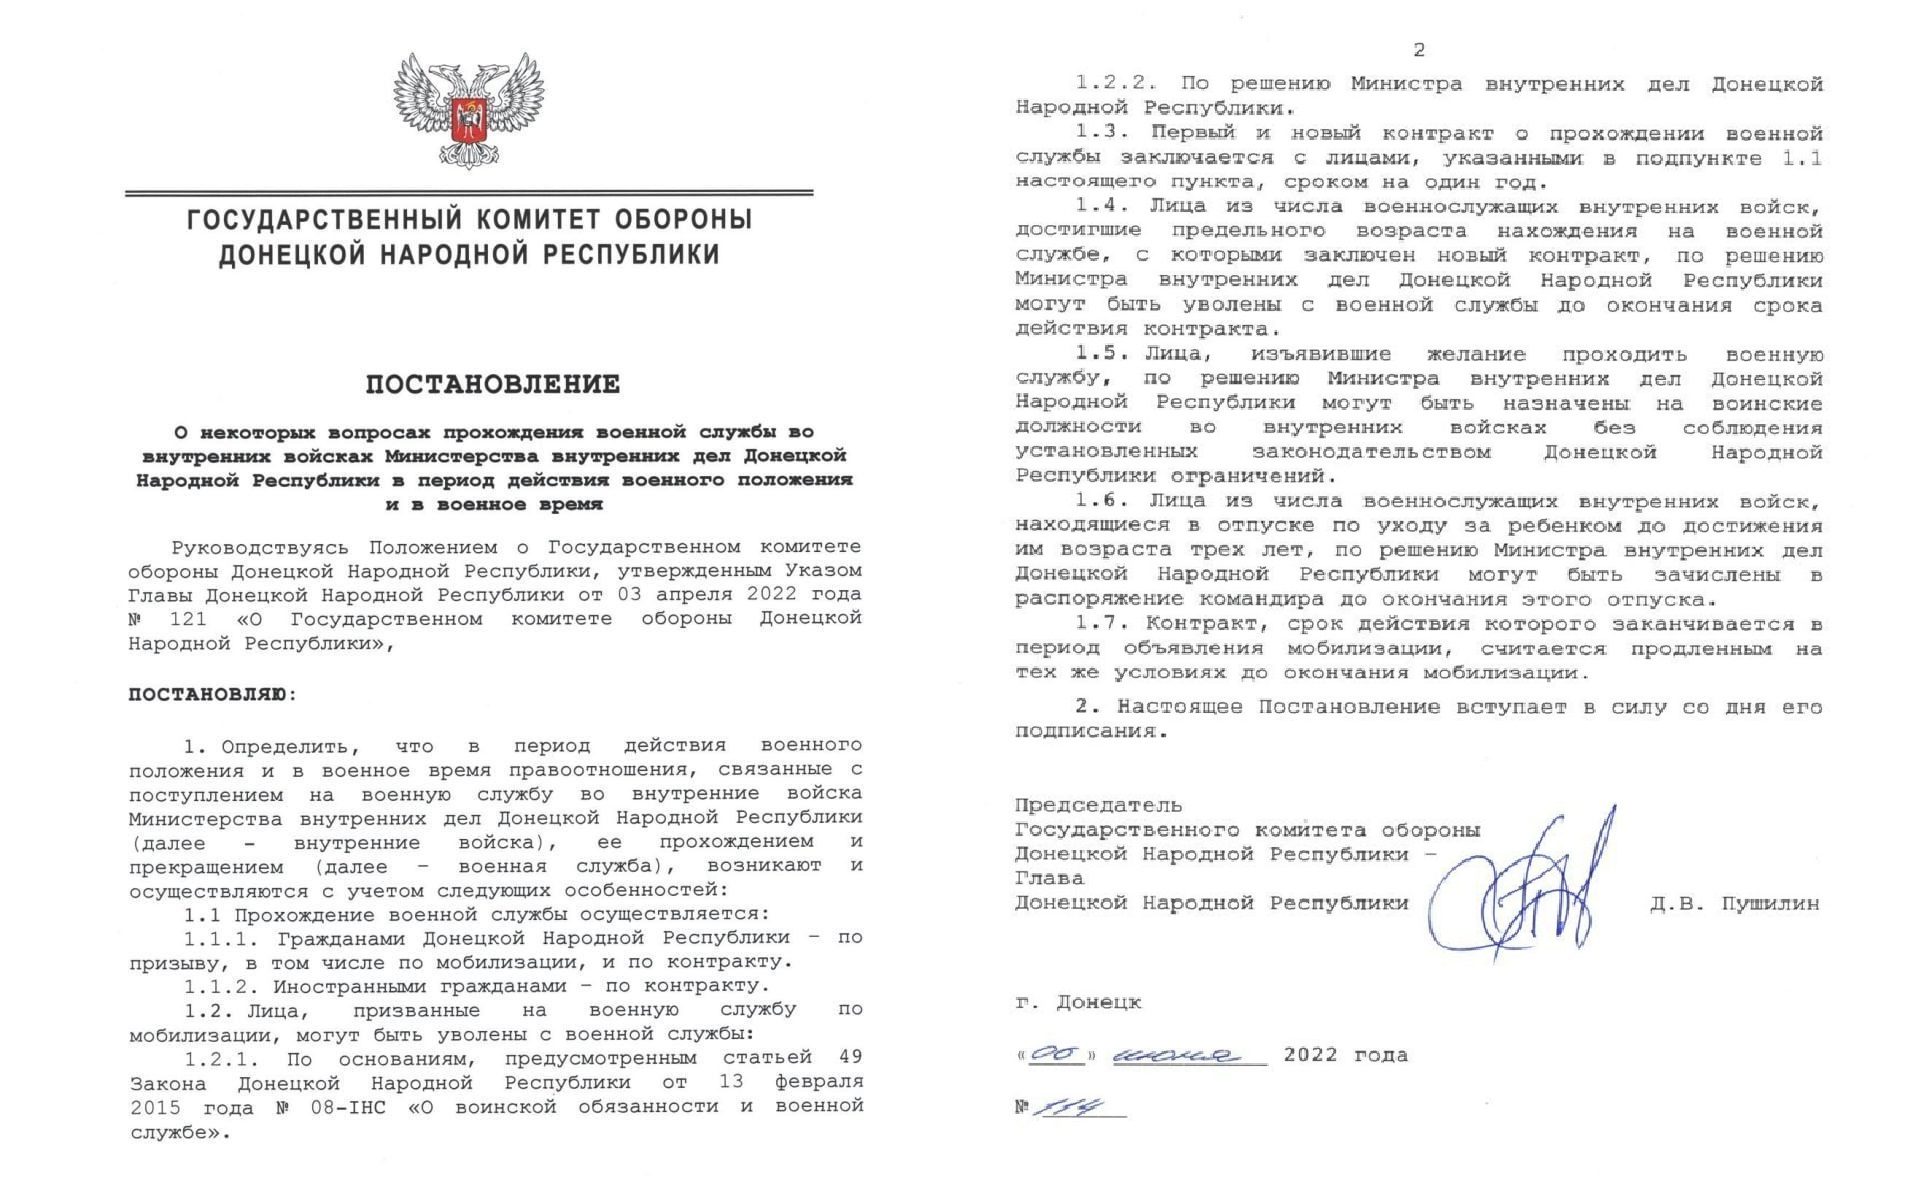 В т.н. “ДНР” решили брать в ряды оккупационных войск иностранных наемников по контракту 1